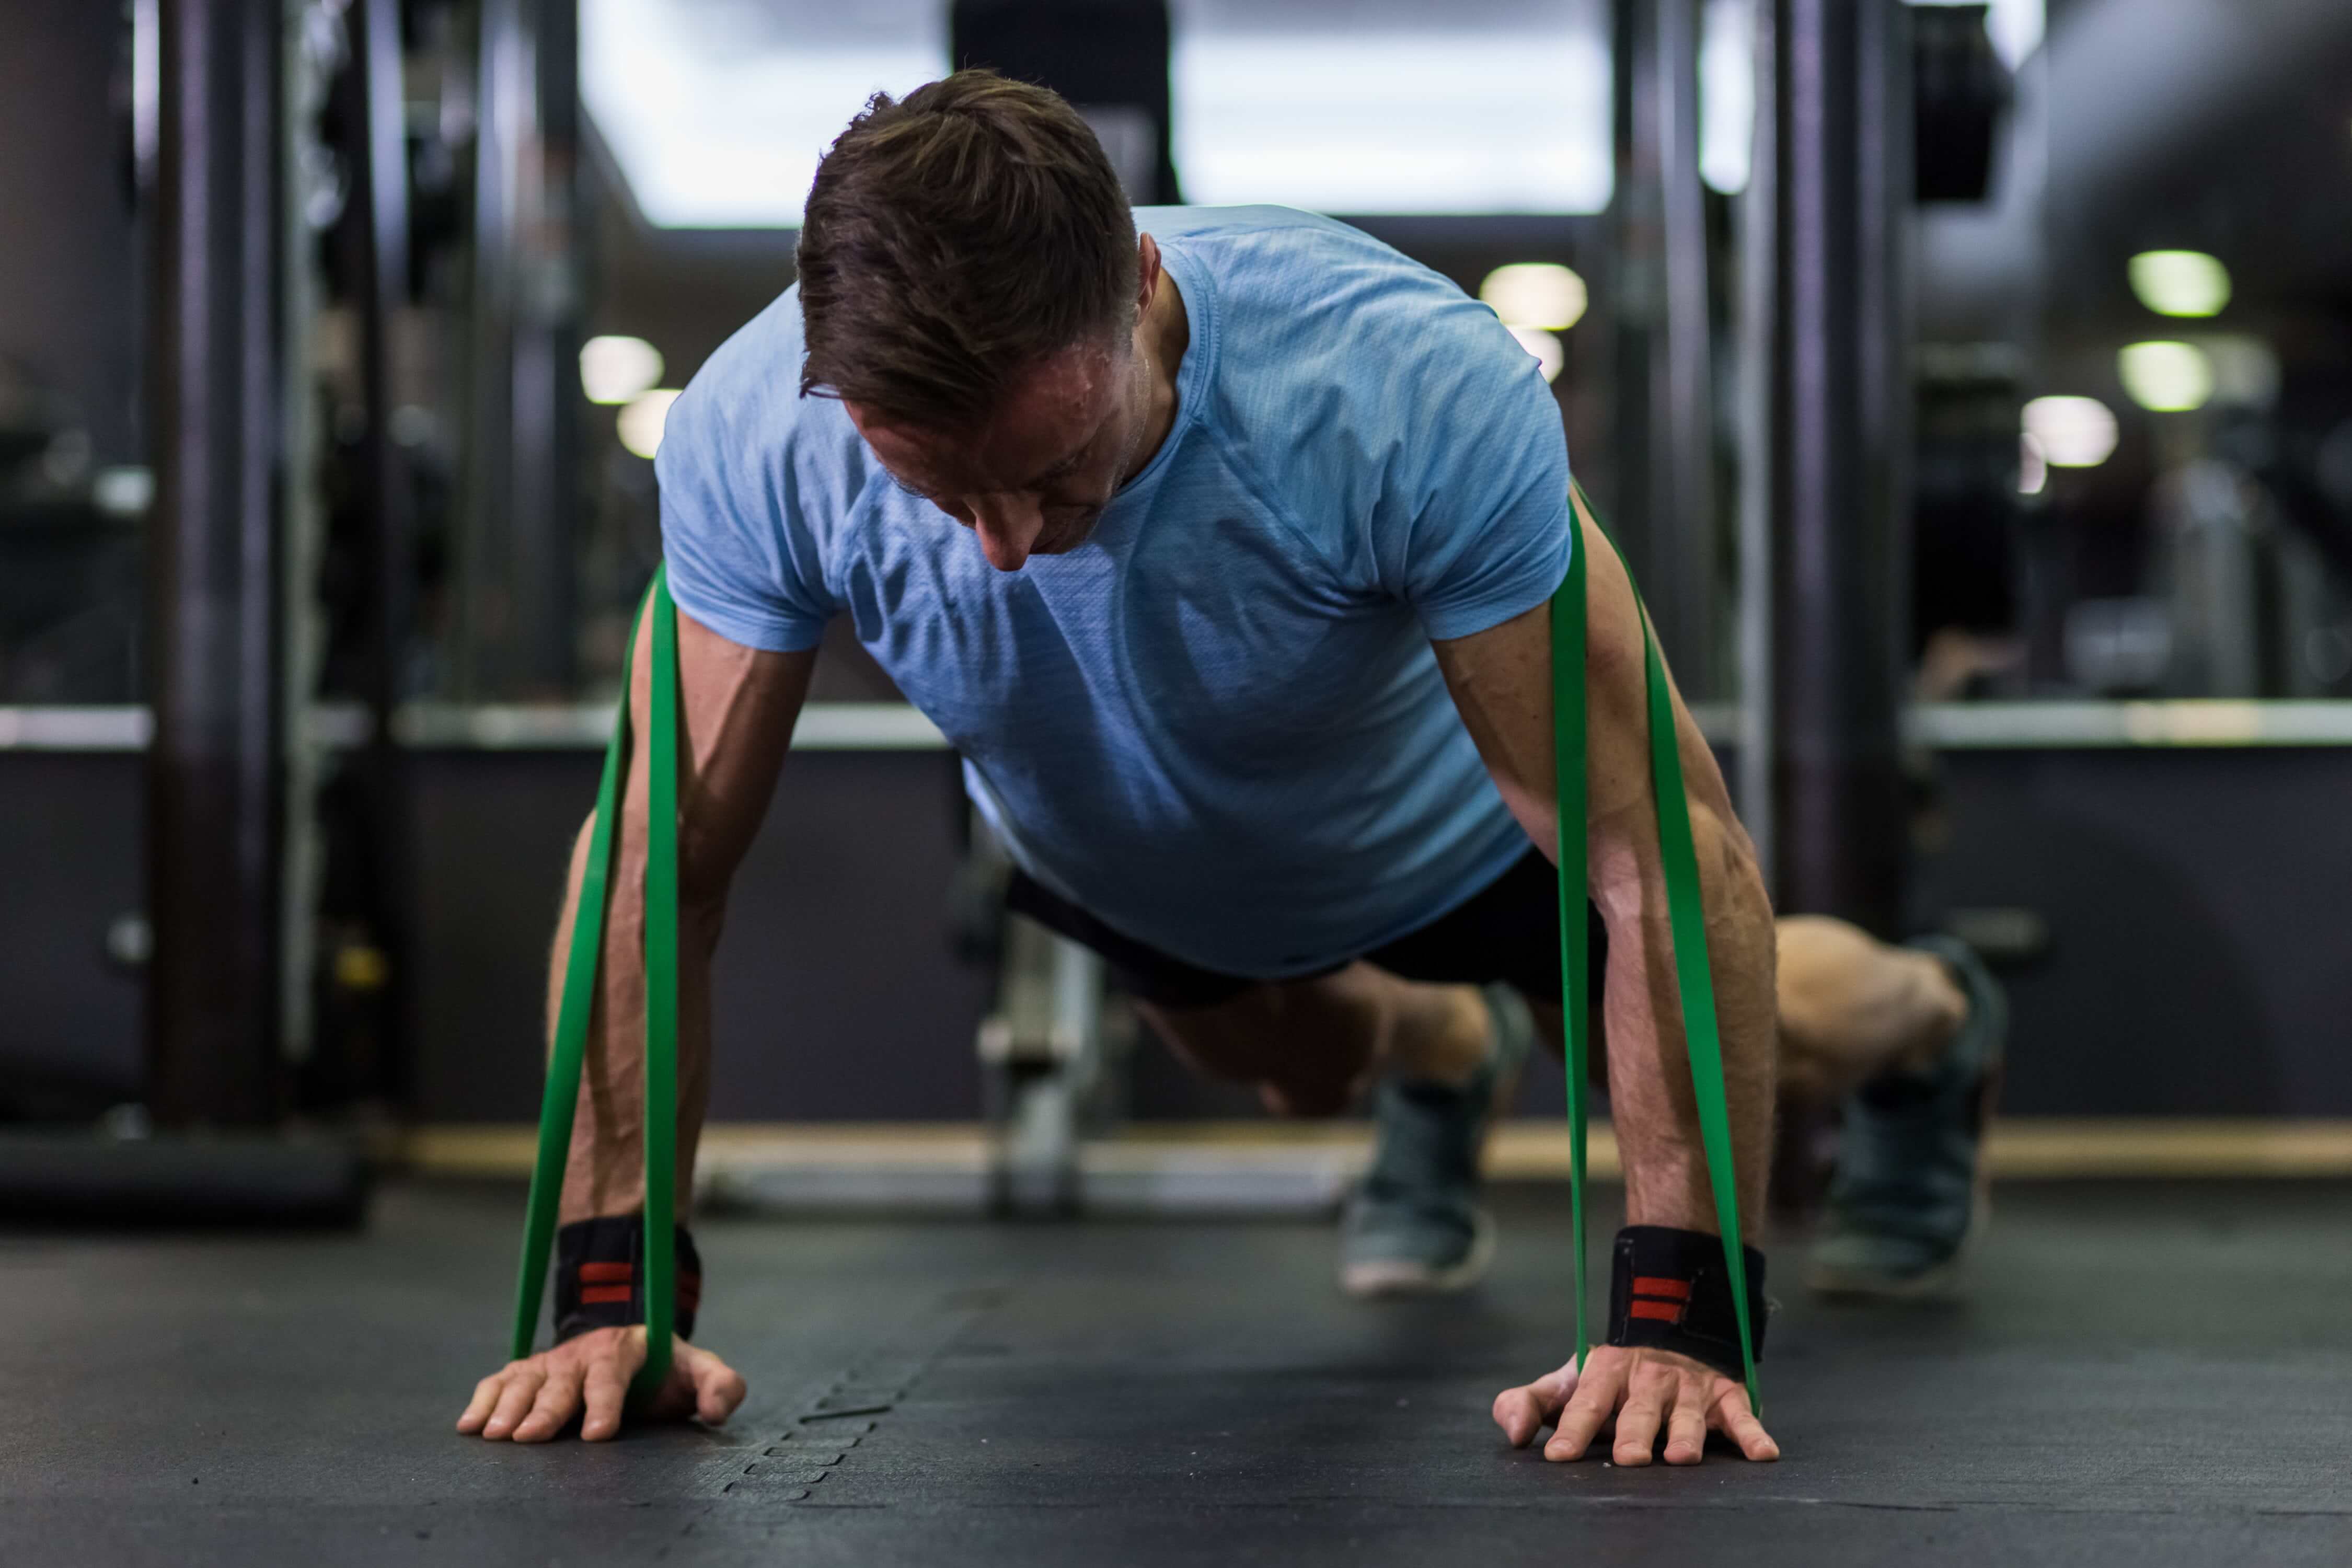 ejercicios cinta elastica - Buscar con Google  Ejercicios con banda,  Ejercicios con banda elastica, Ejercicios de estiramiento